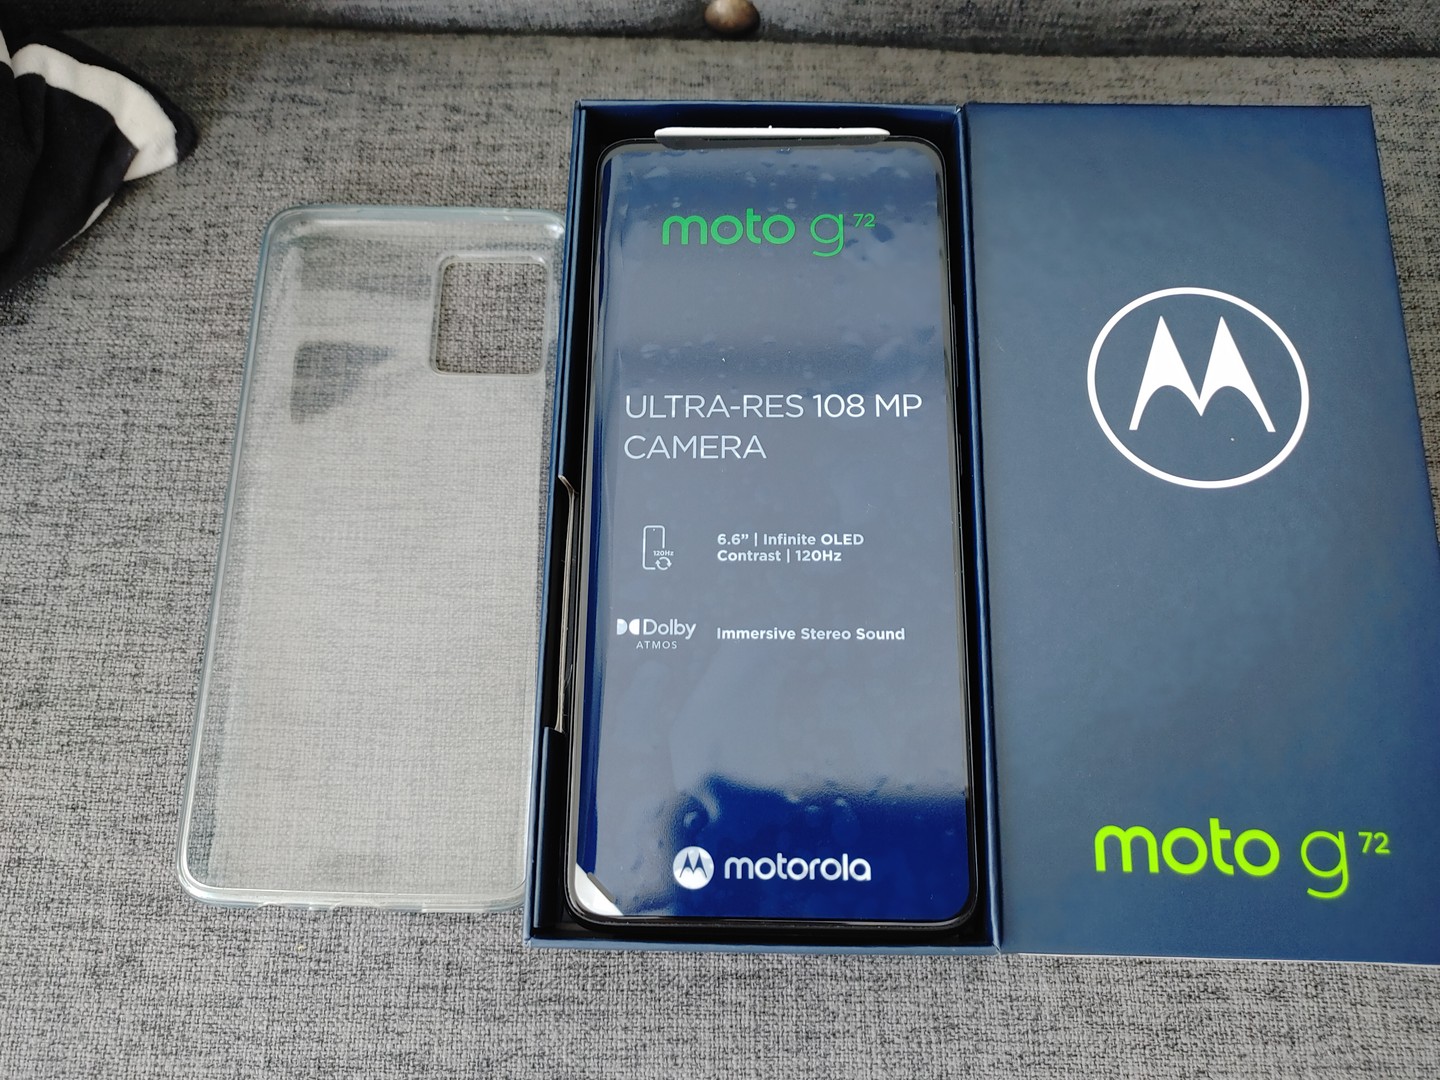 celulares y tabletas - Motorola G72 nuevo en su caja de claro 2